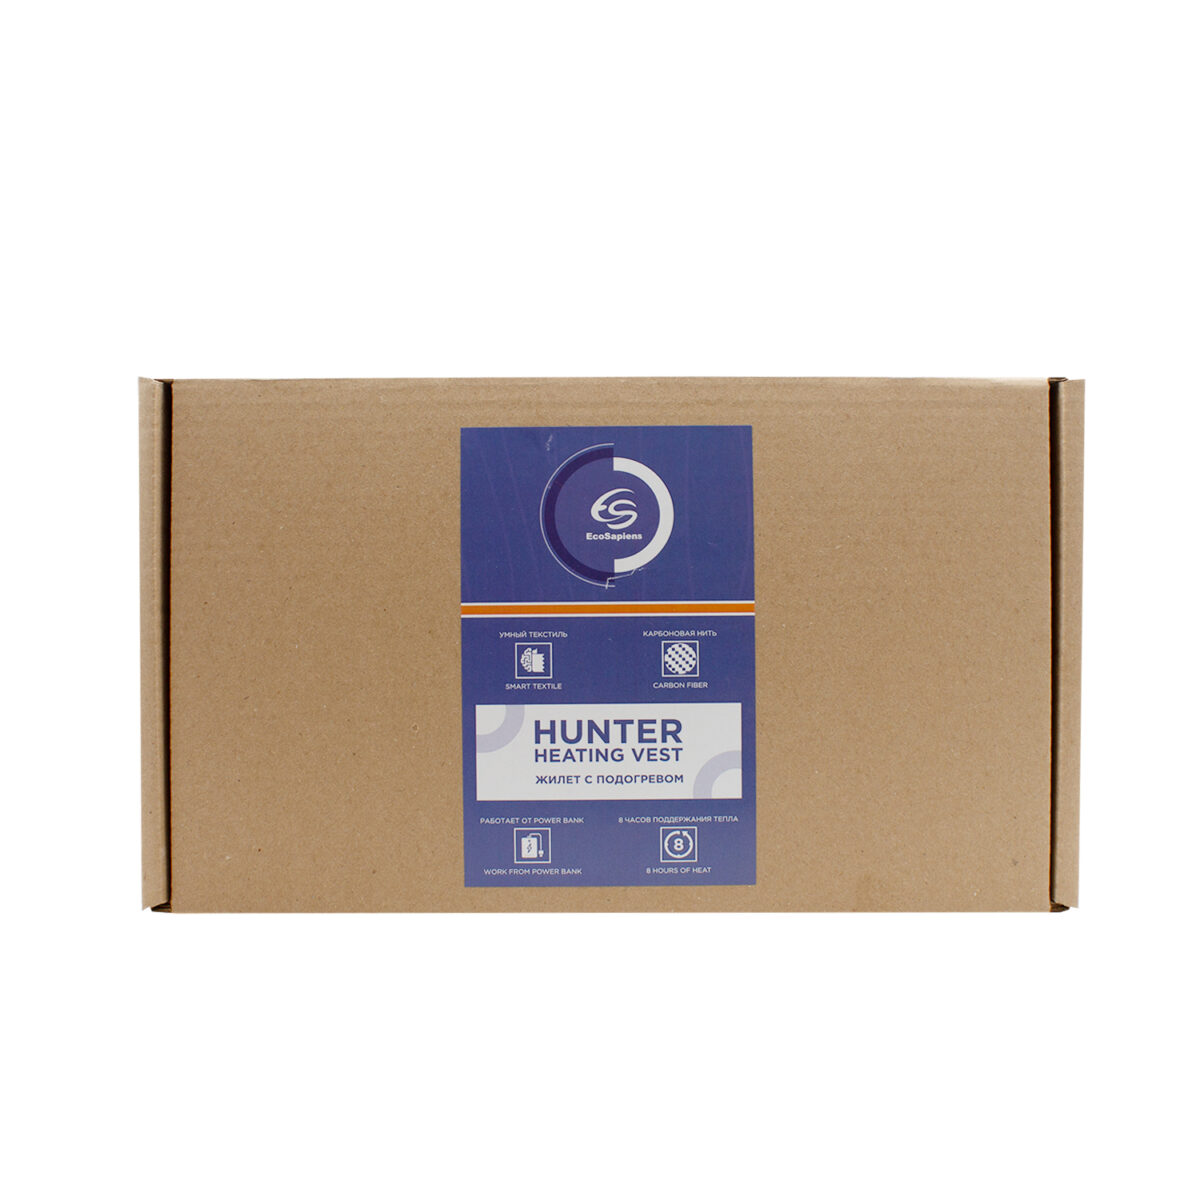 Hunter s316 box2.jpg